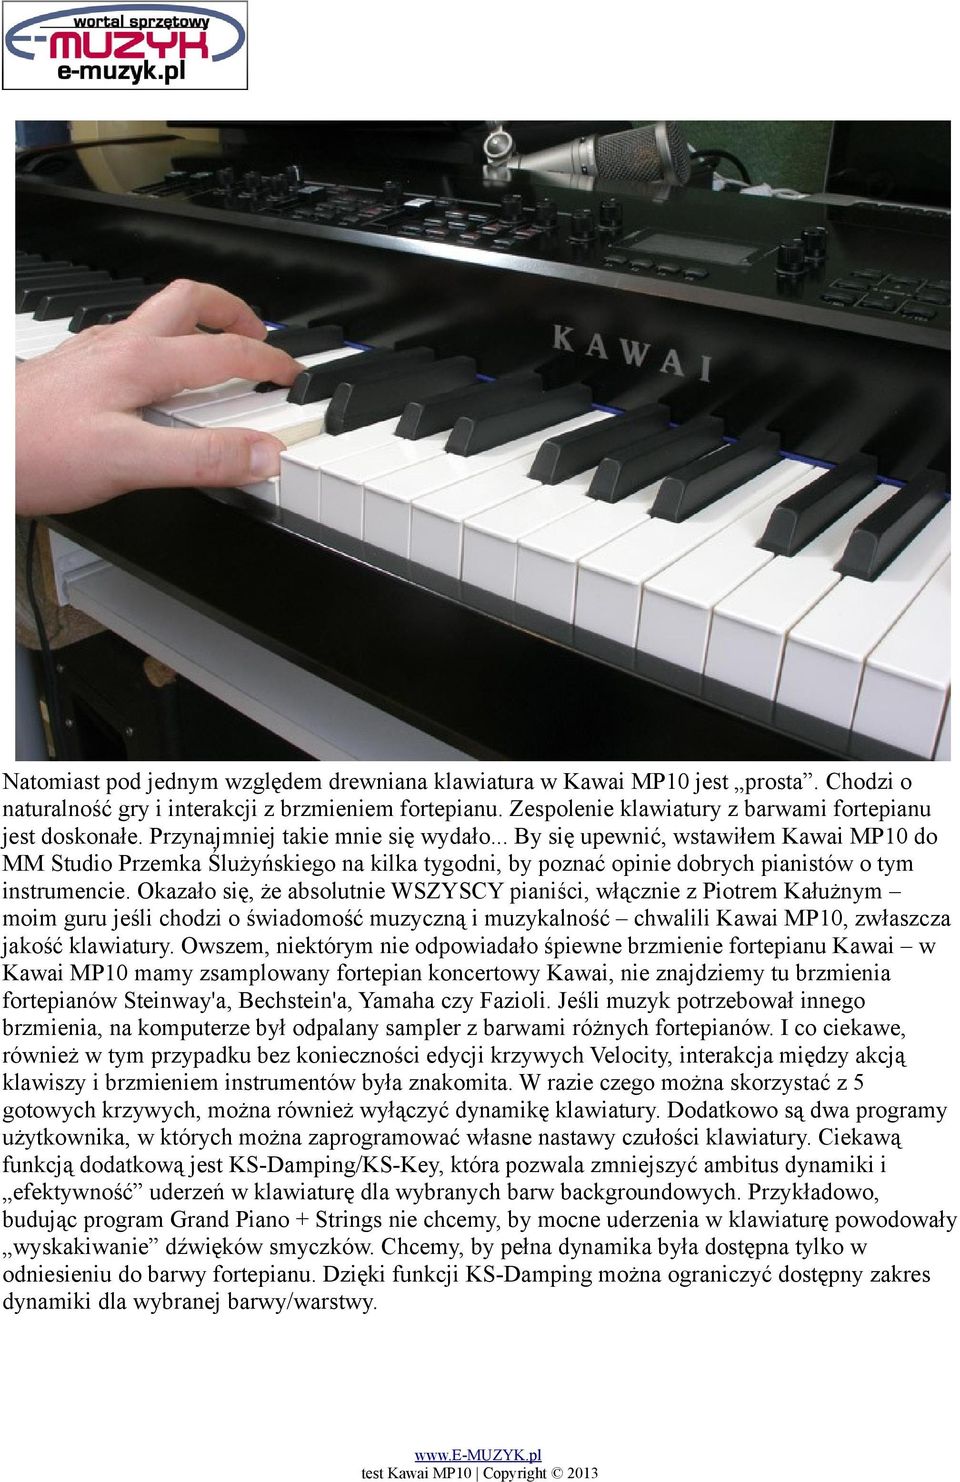 Okazało się, że absolutnie WSZYSCY pianiści, włącznie z Piotrem Kałużnym moim guru jeśli chodzi o świadomość muzyczną i muzykalność chwalili Kawai MP10, zwłaszcza jakość klawiatury.